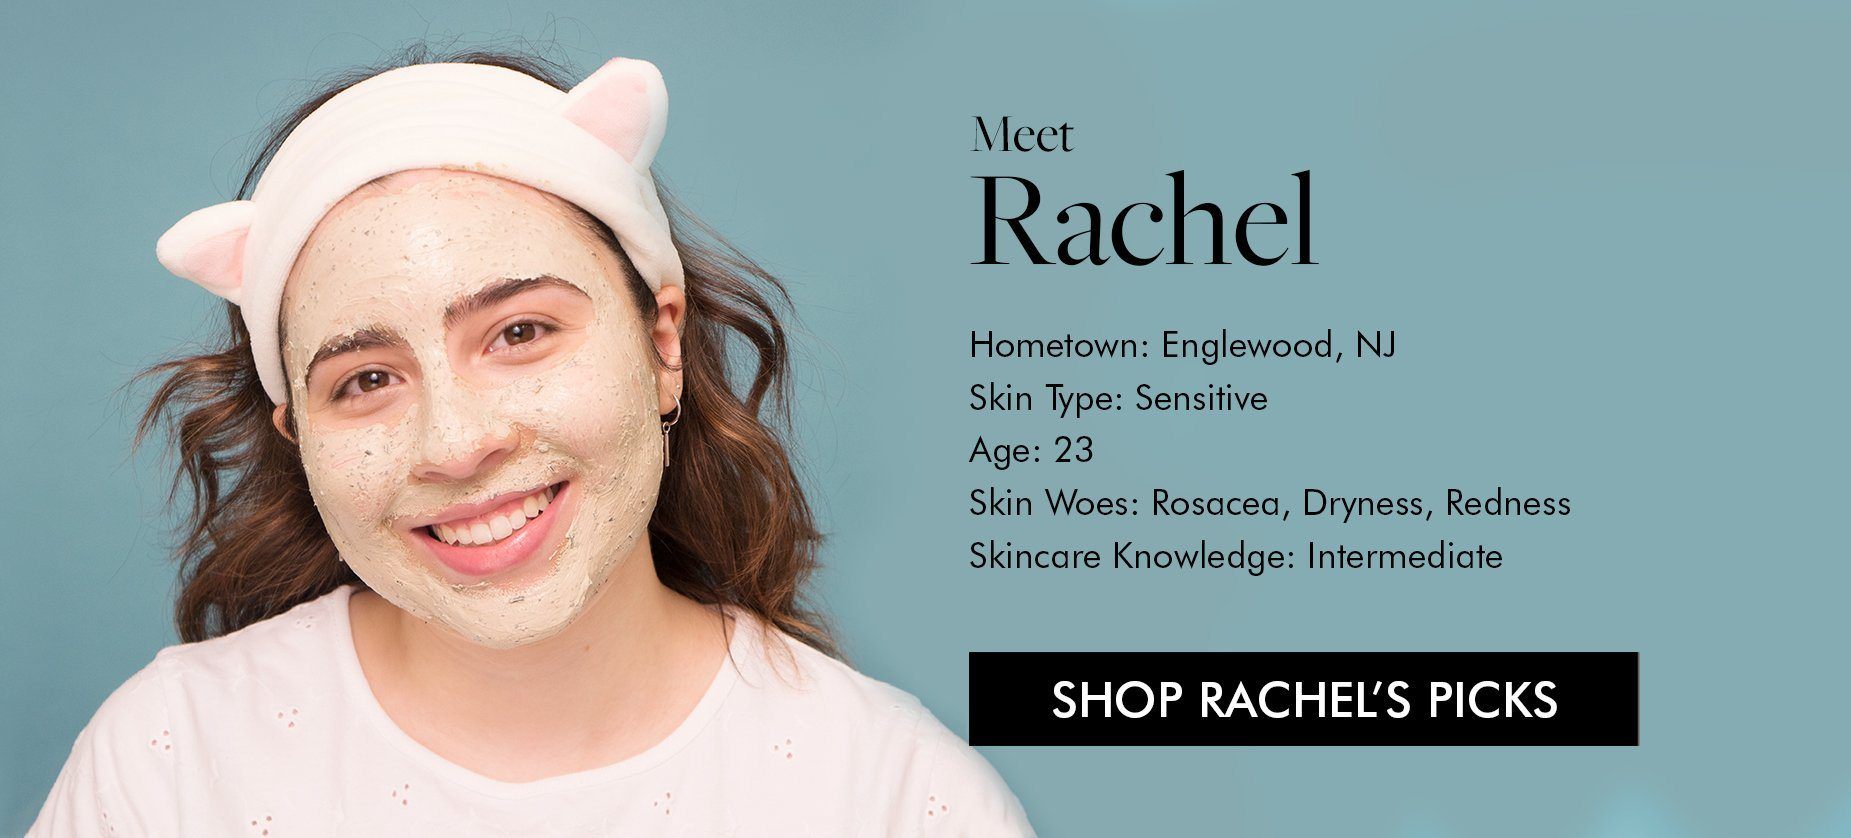 Shop Rachel's Picks